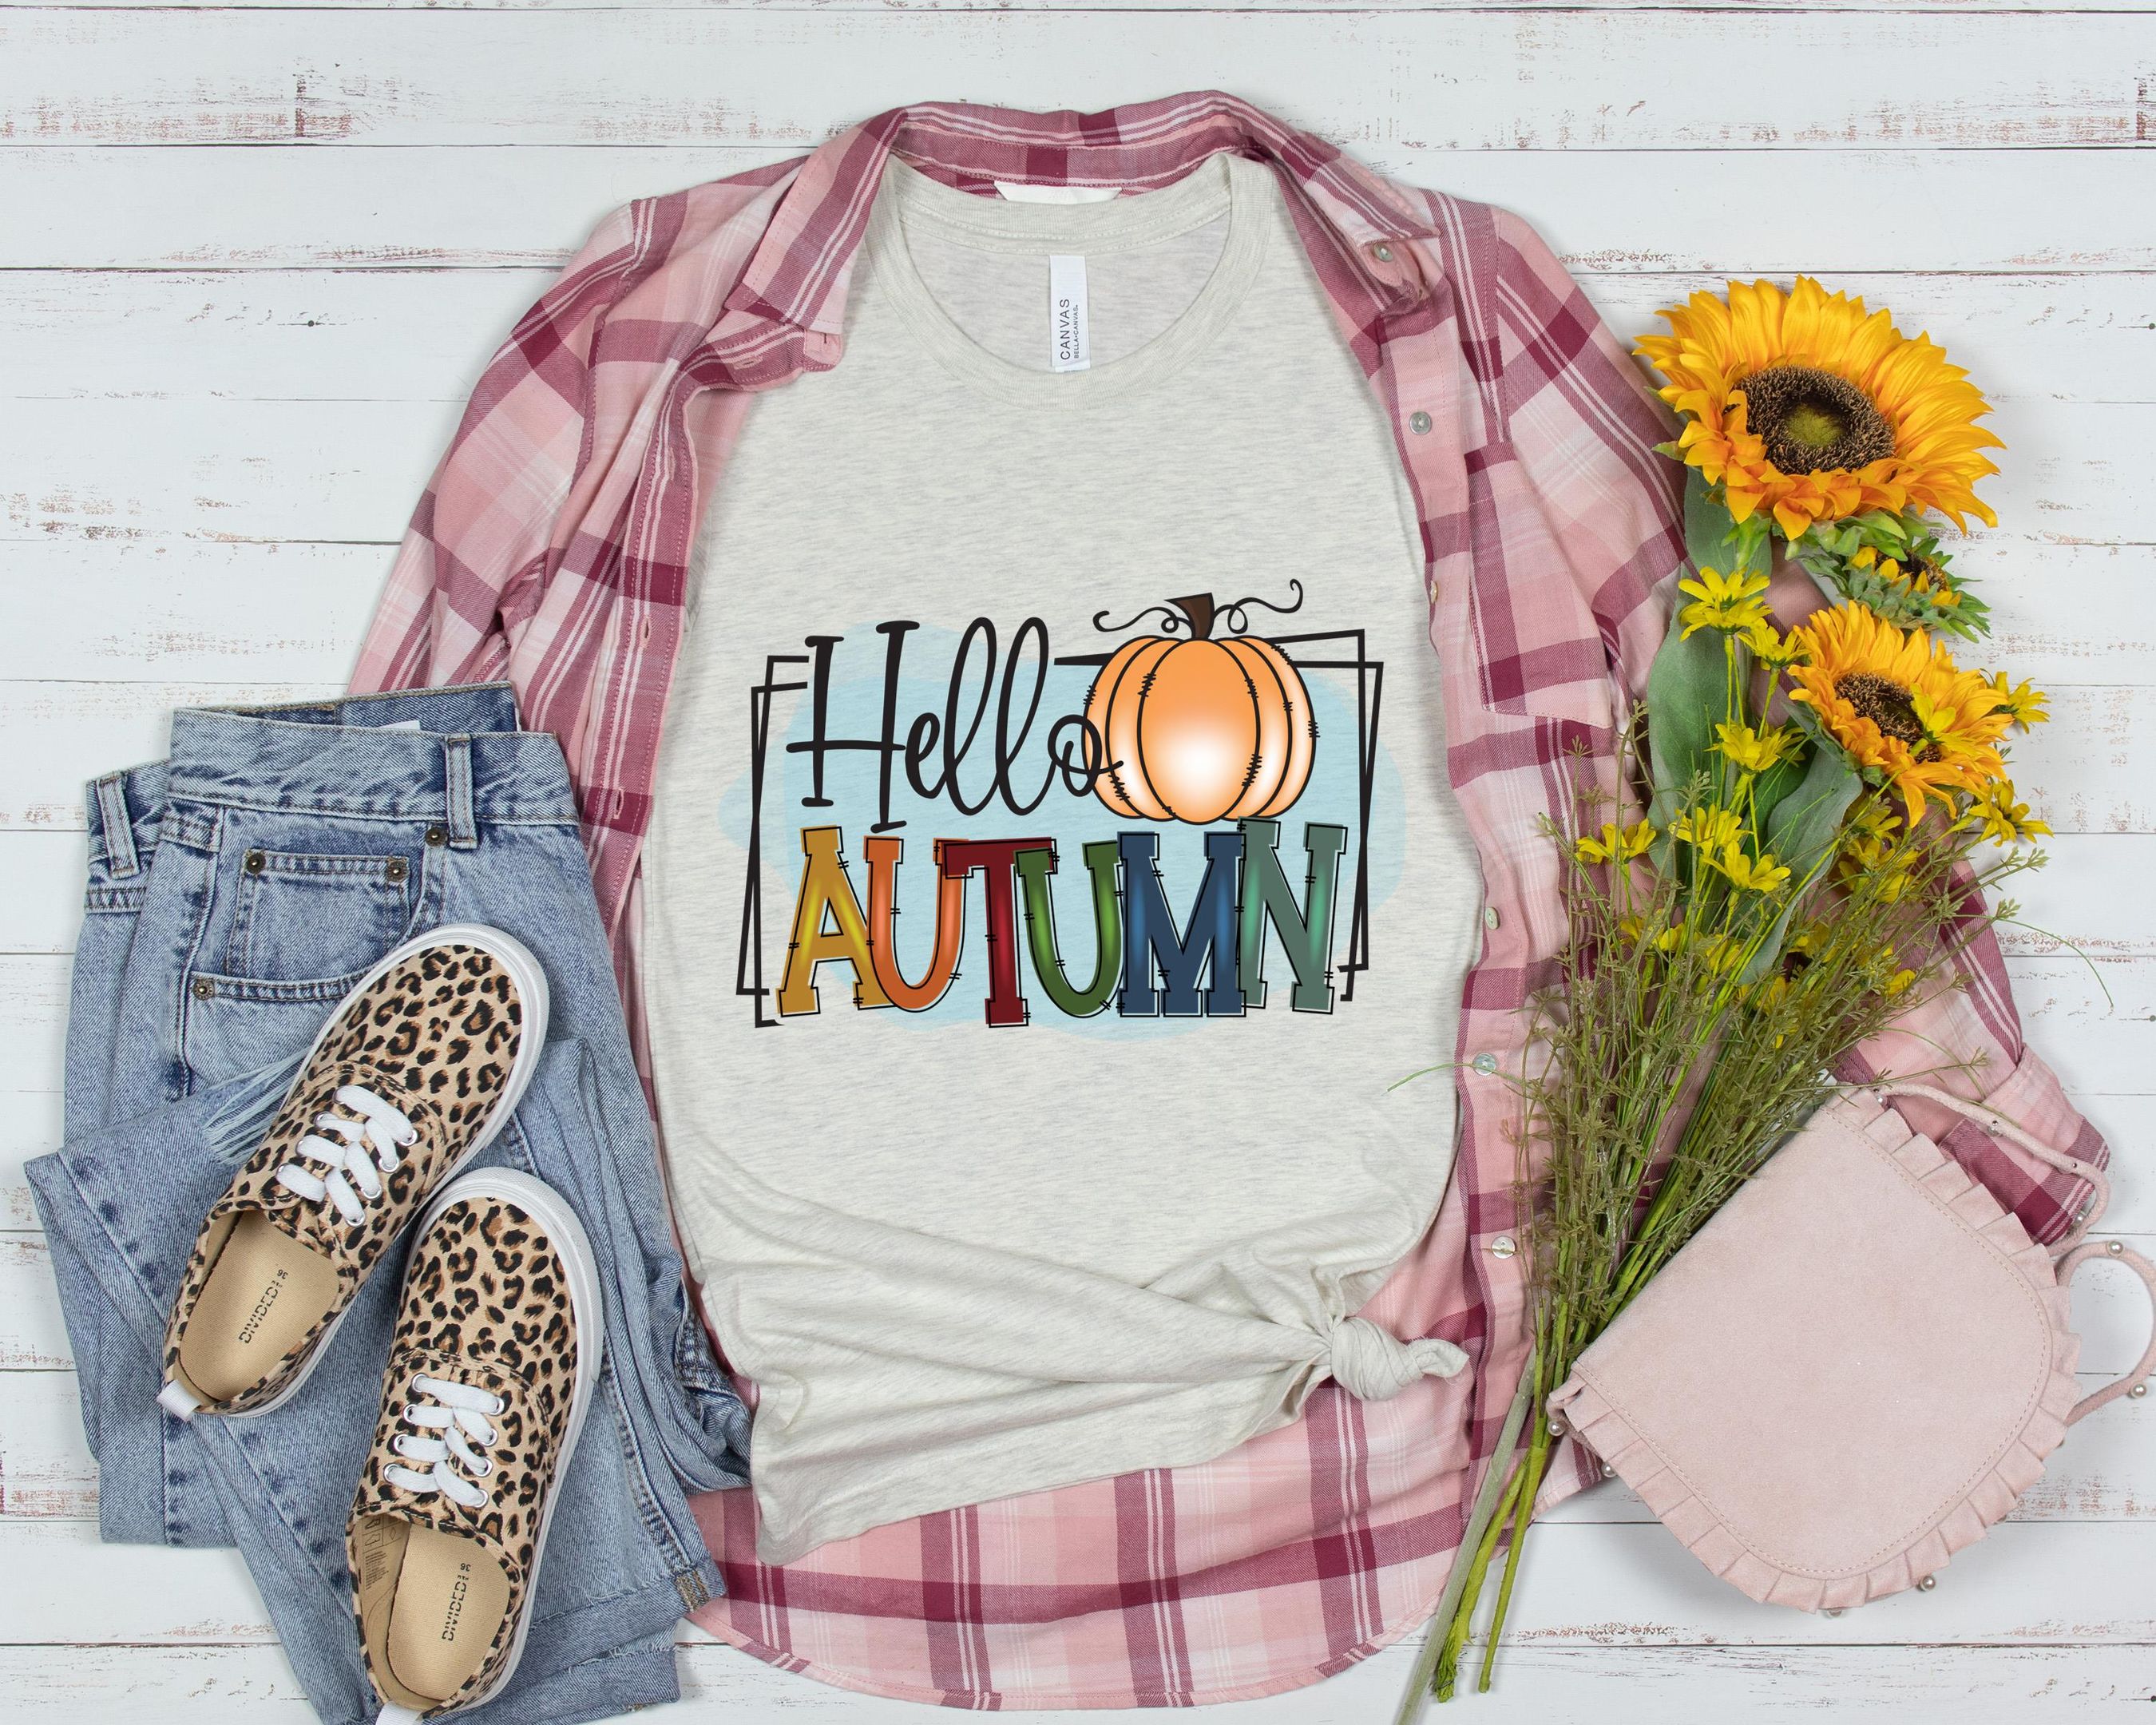 Hallo Autumn Shirt, Fall Season Shirt, Autumn Shirt, Happy Mid Shirt, For Autumn Shirt, Pumpkin Season Shirt